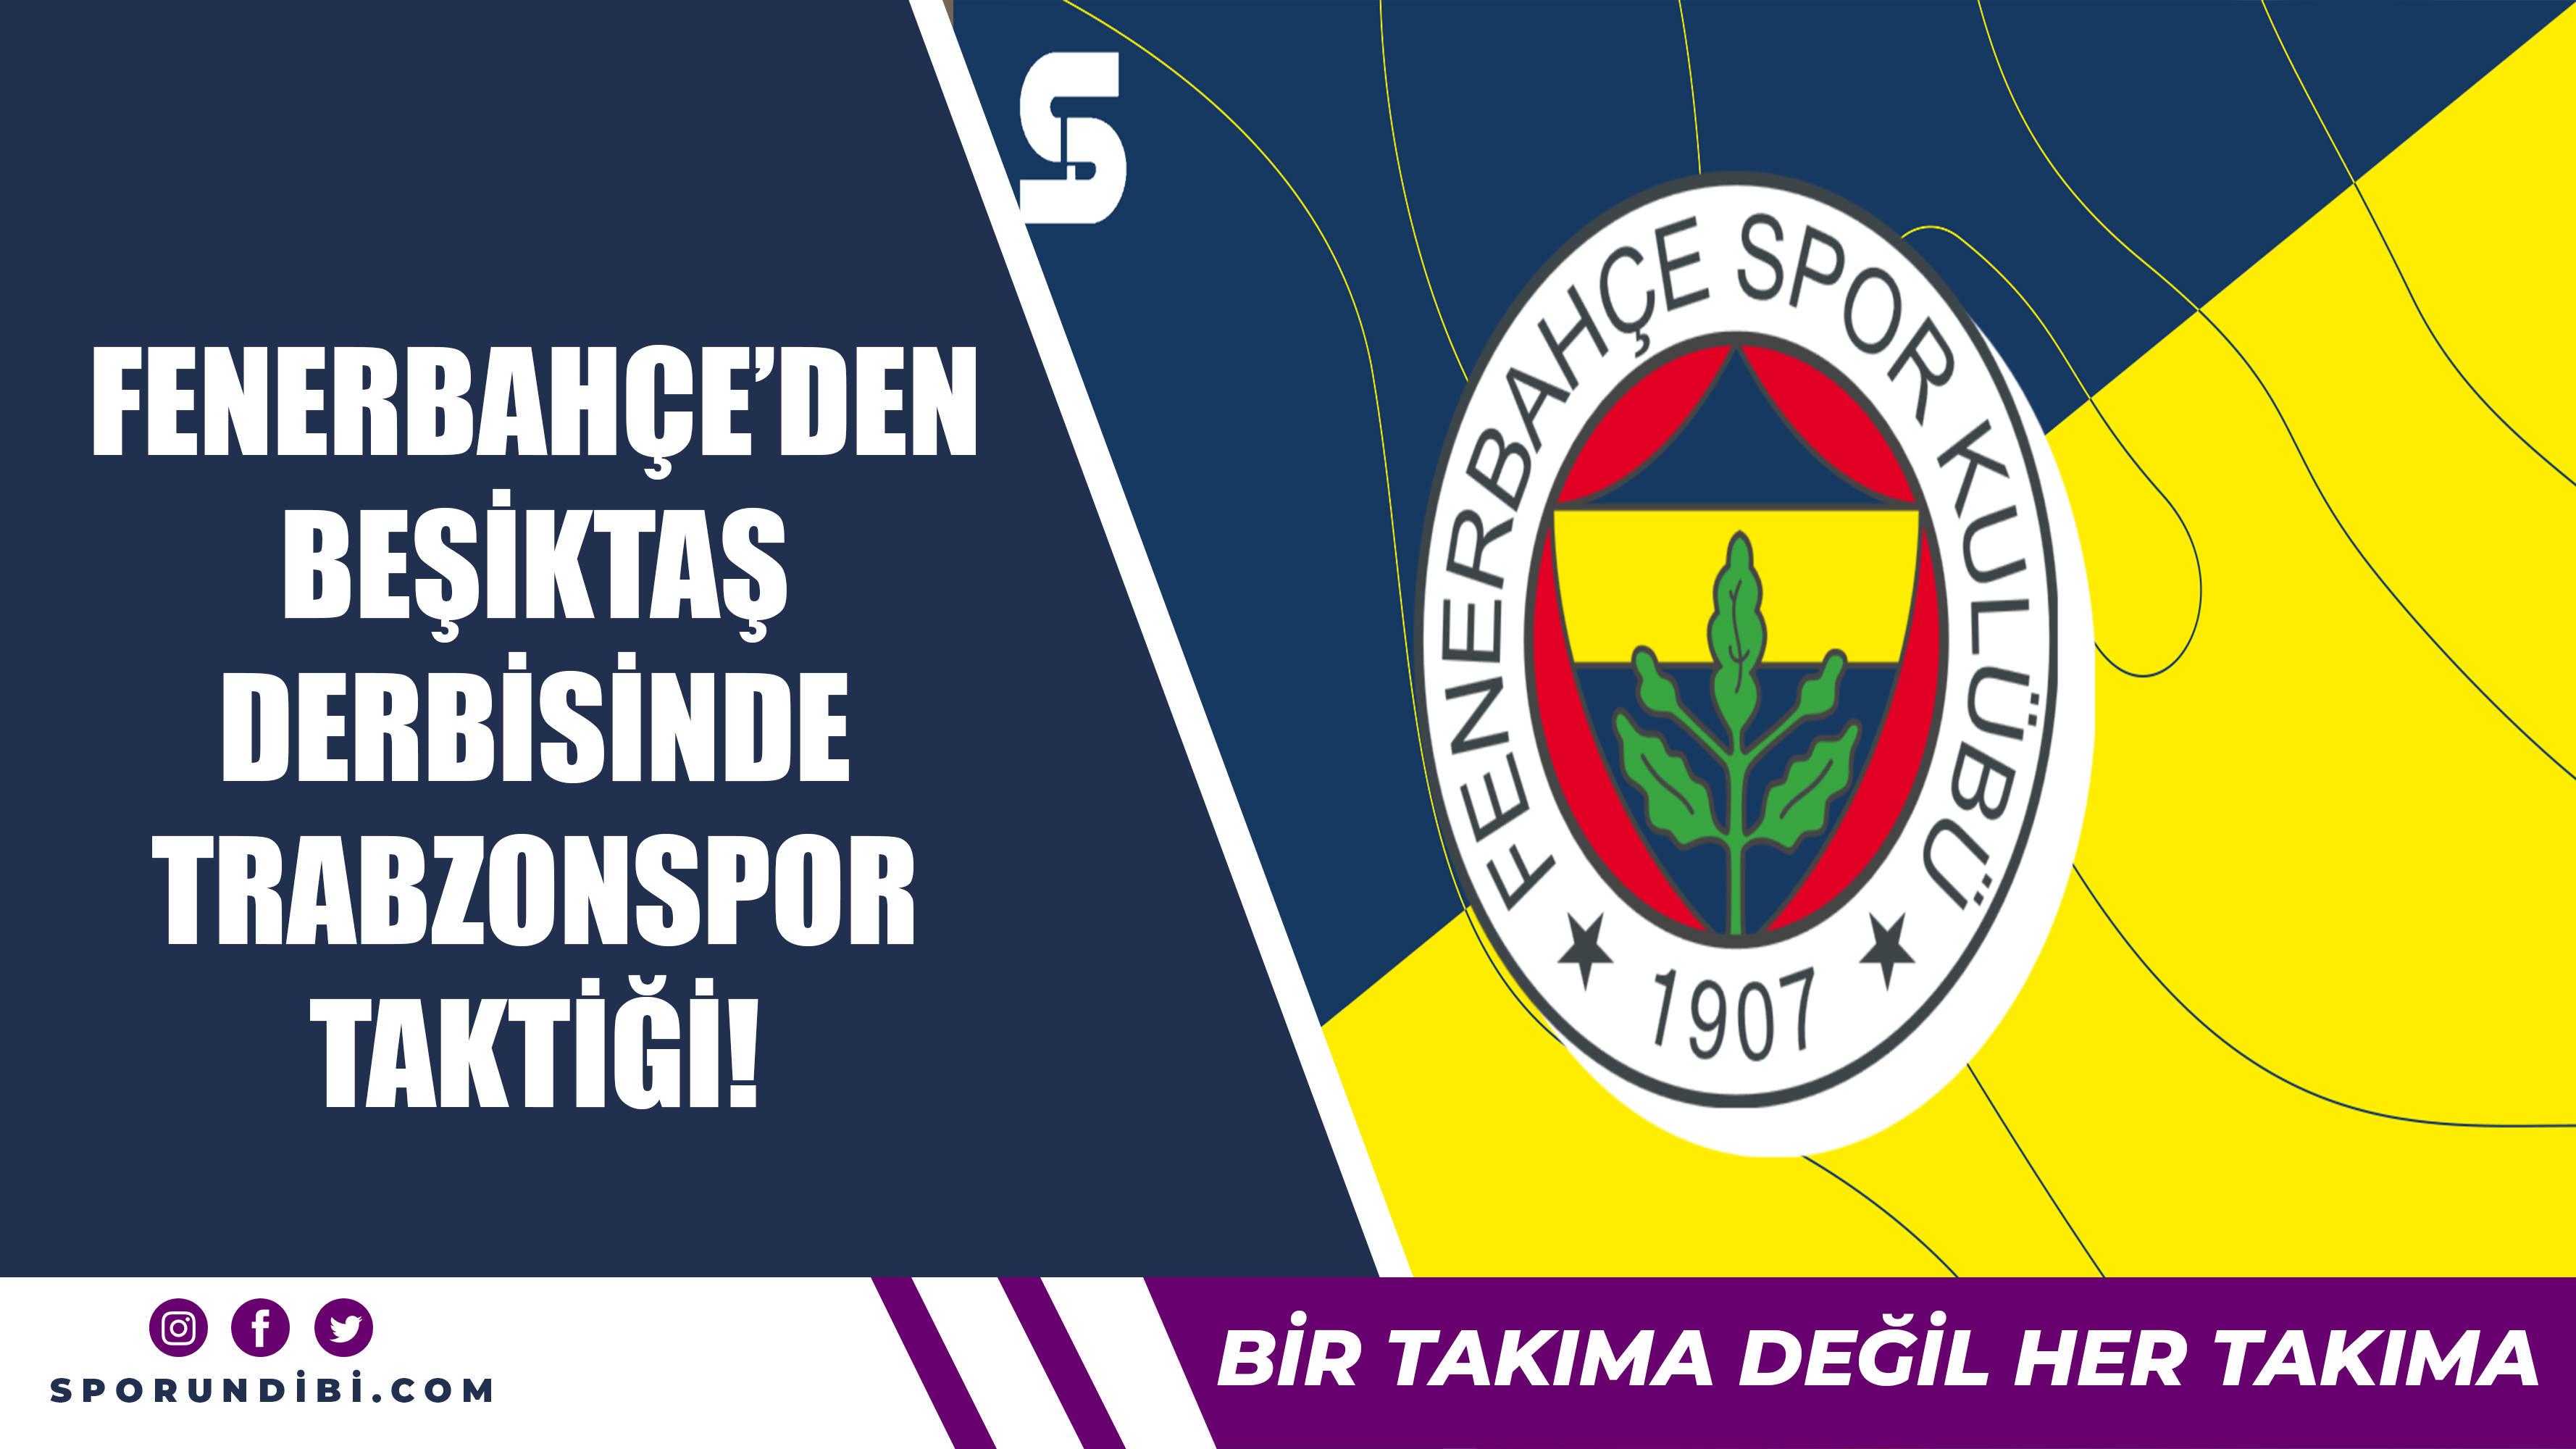 Fenerbahçe'den Beşiktaş derbisinde Trabzonspor taktiği!